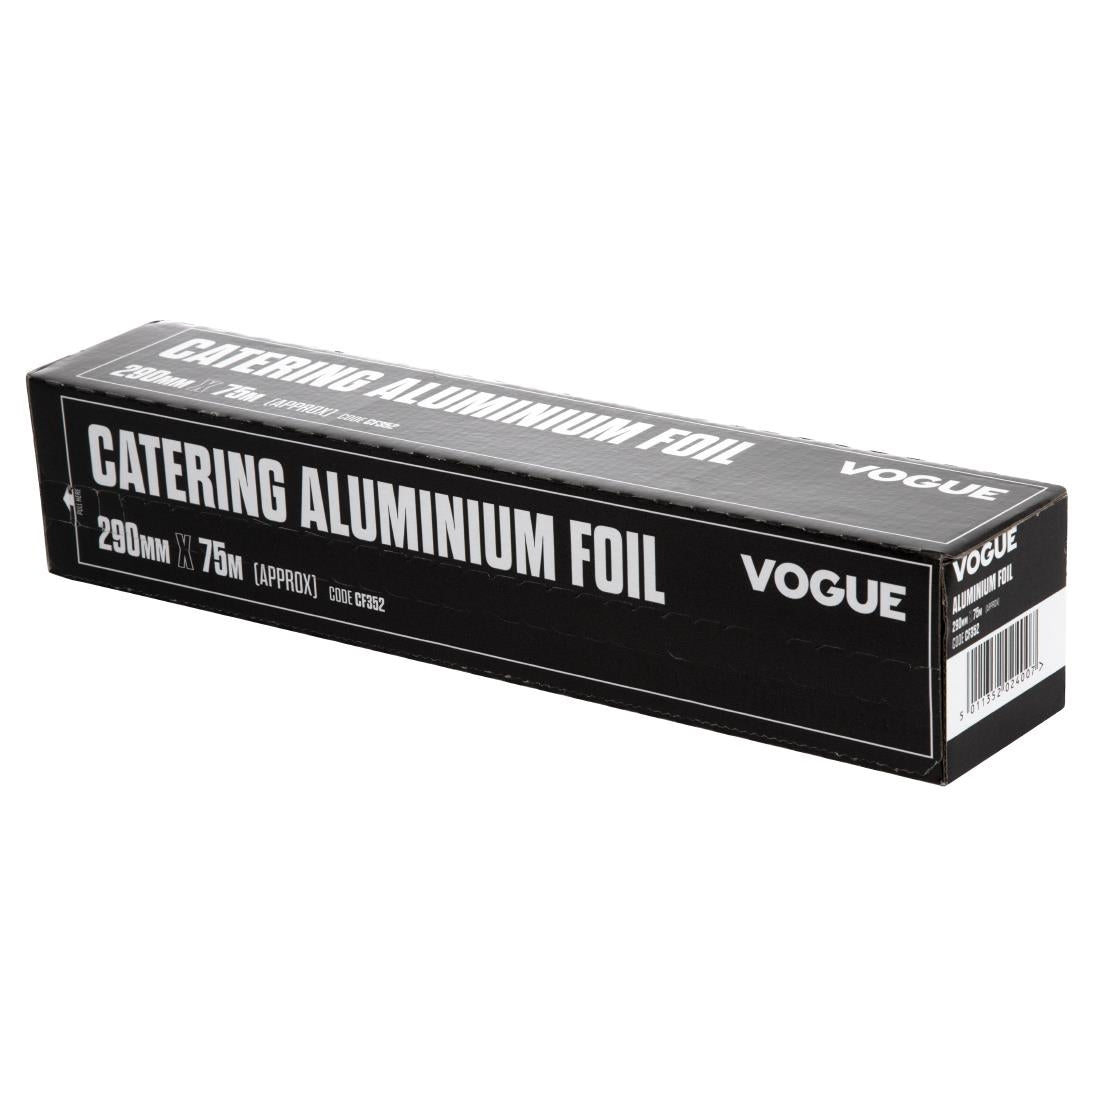 Vogue Aluminium Foil